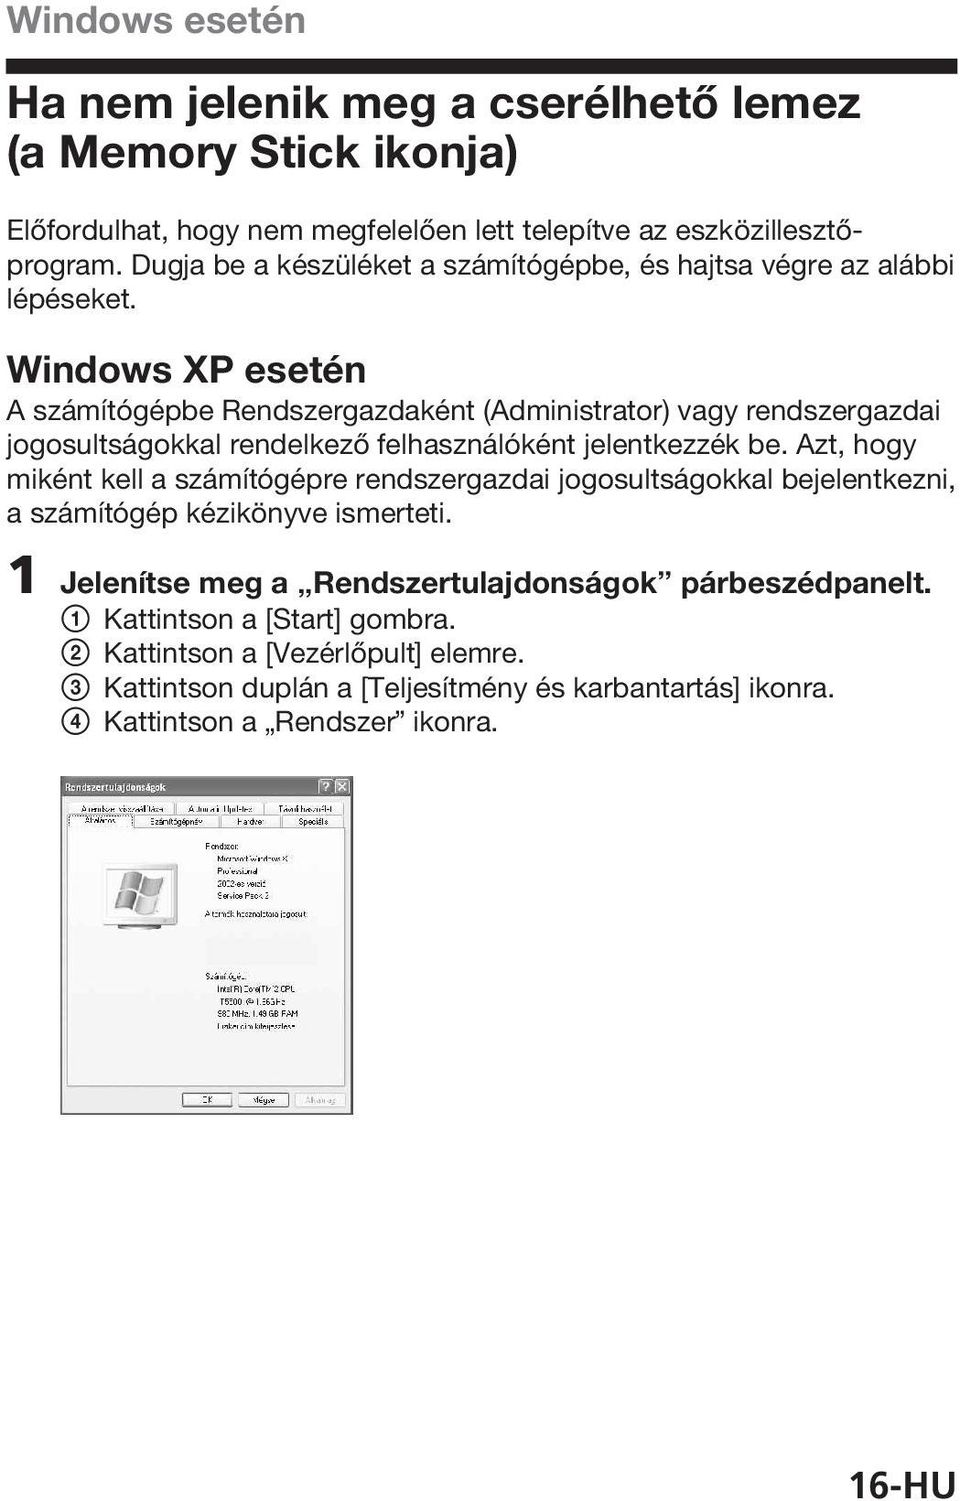 Windows XP esetén A számítógépbe Rendszergazdaként (Administrator) vagy rendszergazdai jogosultságokkal rendelkező felhasználóként jelentkezzék be.